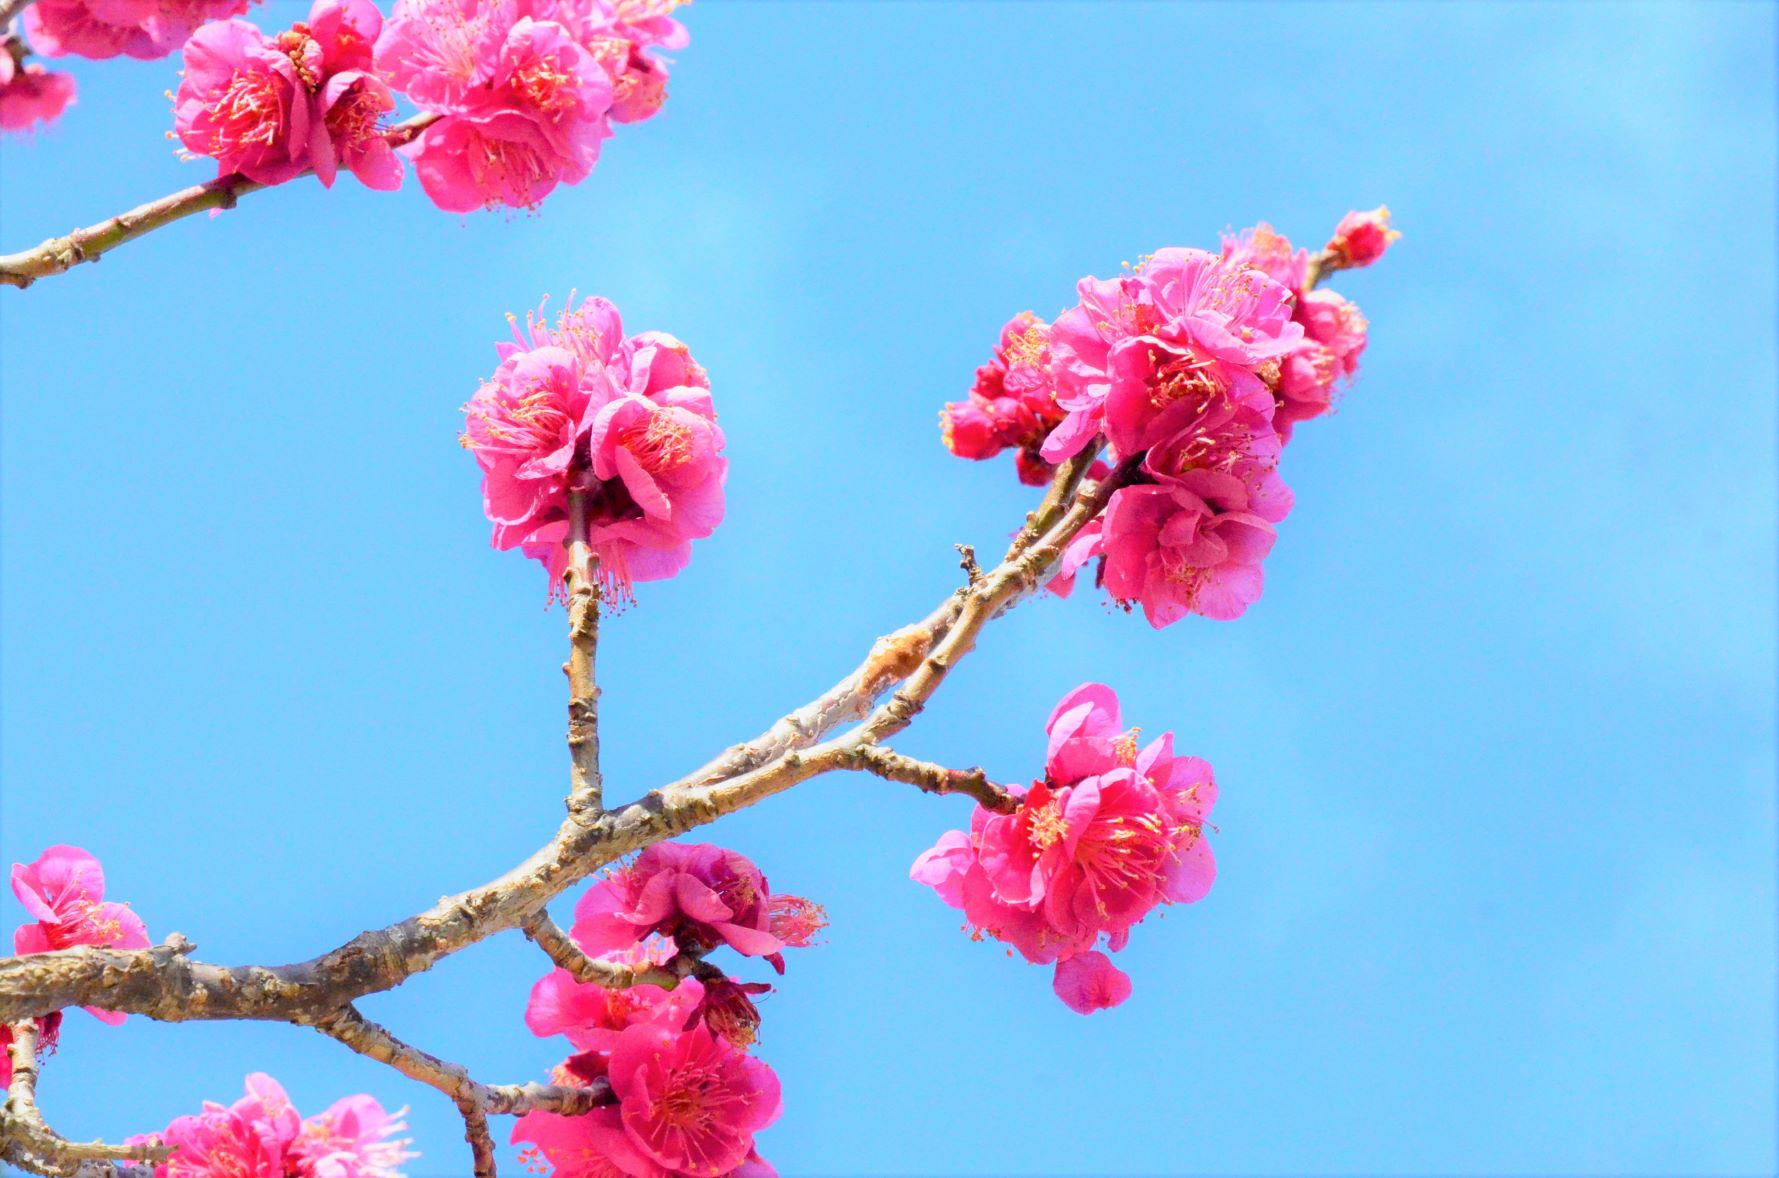 Blue sky and plum blossoms